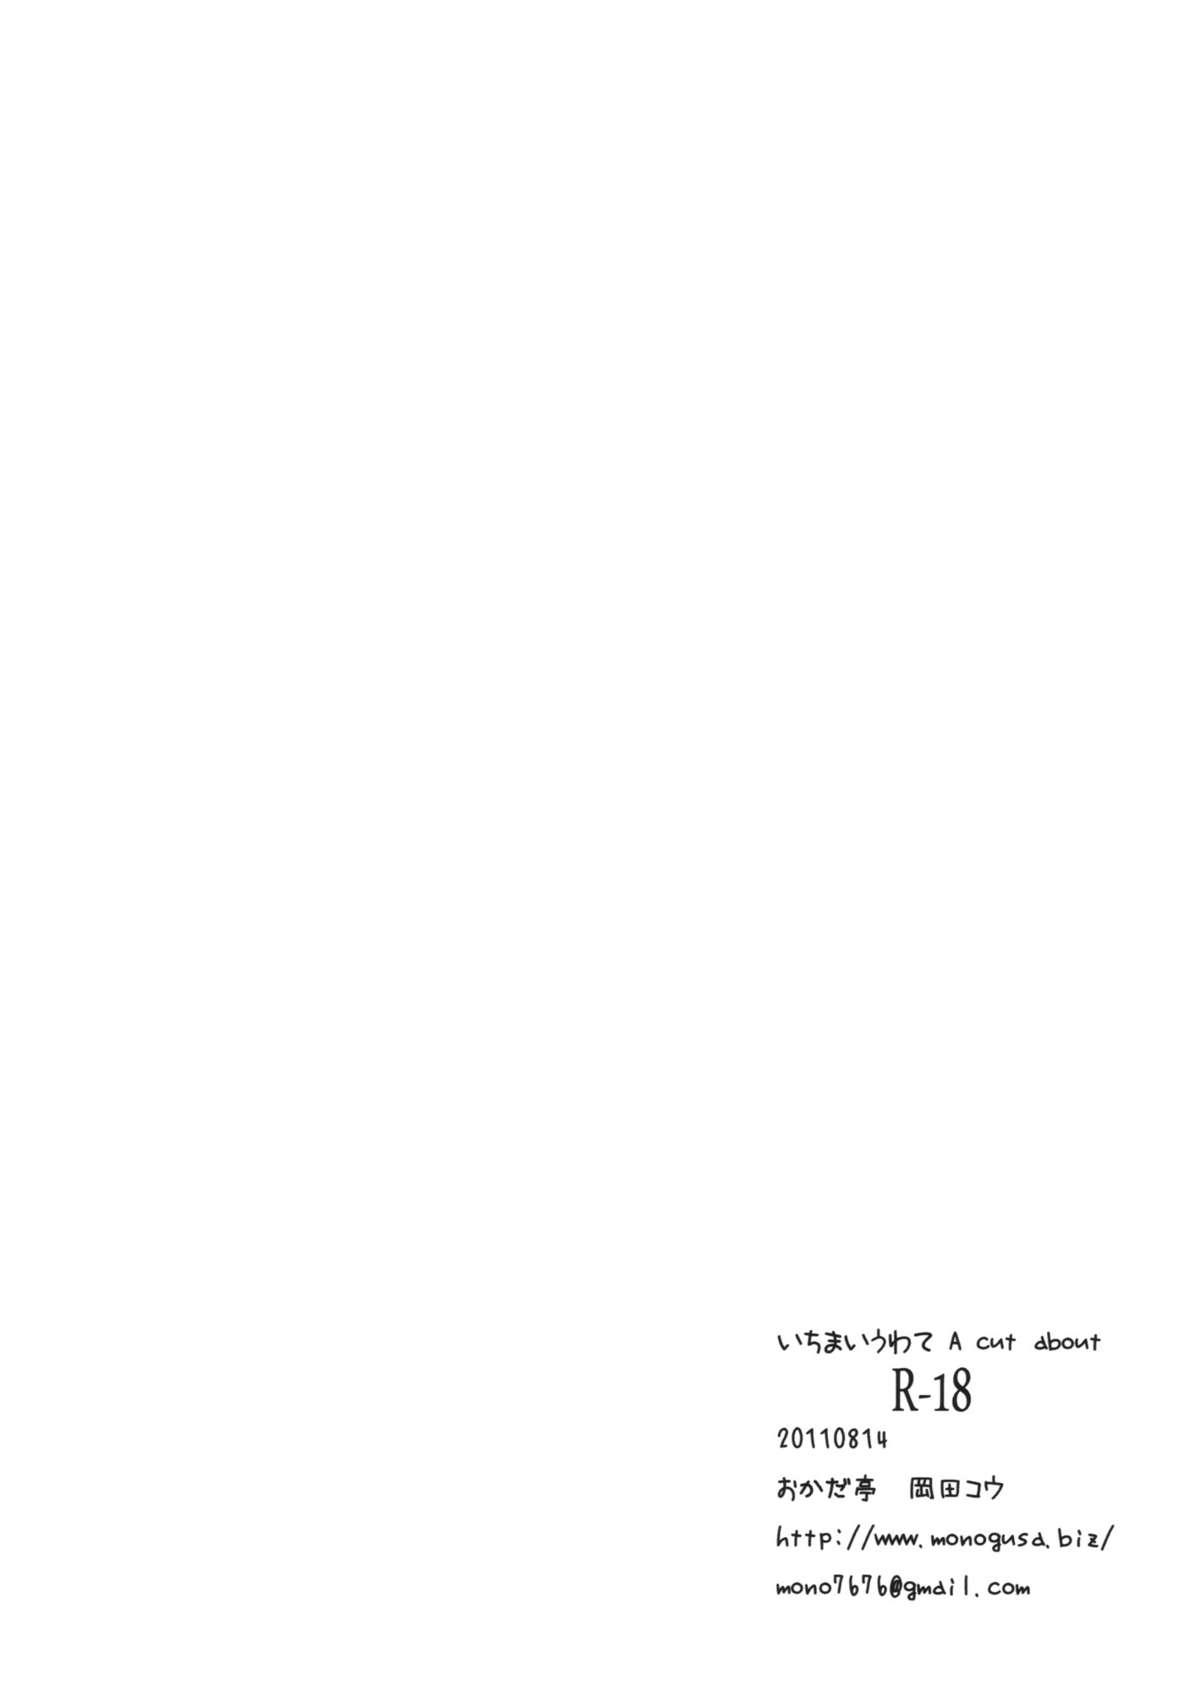 Ichimai Uwate - A cut about +Paper 28